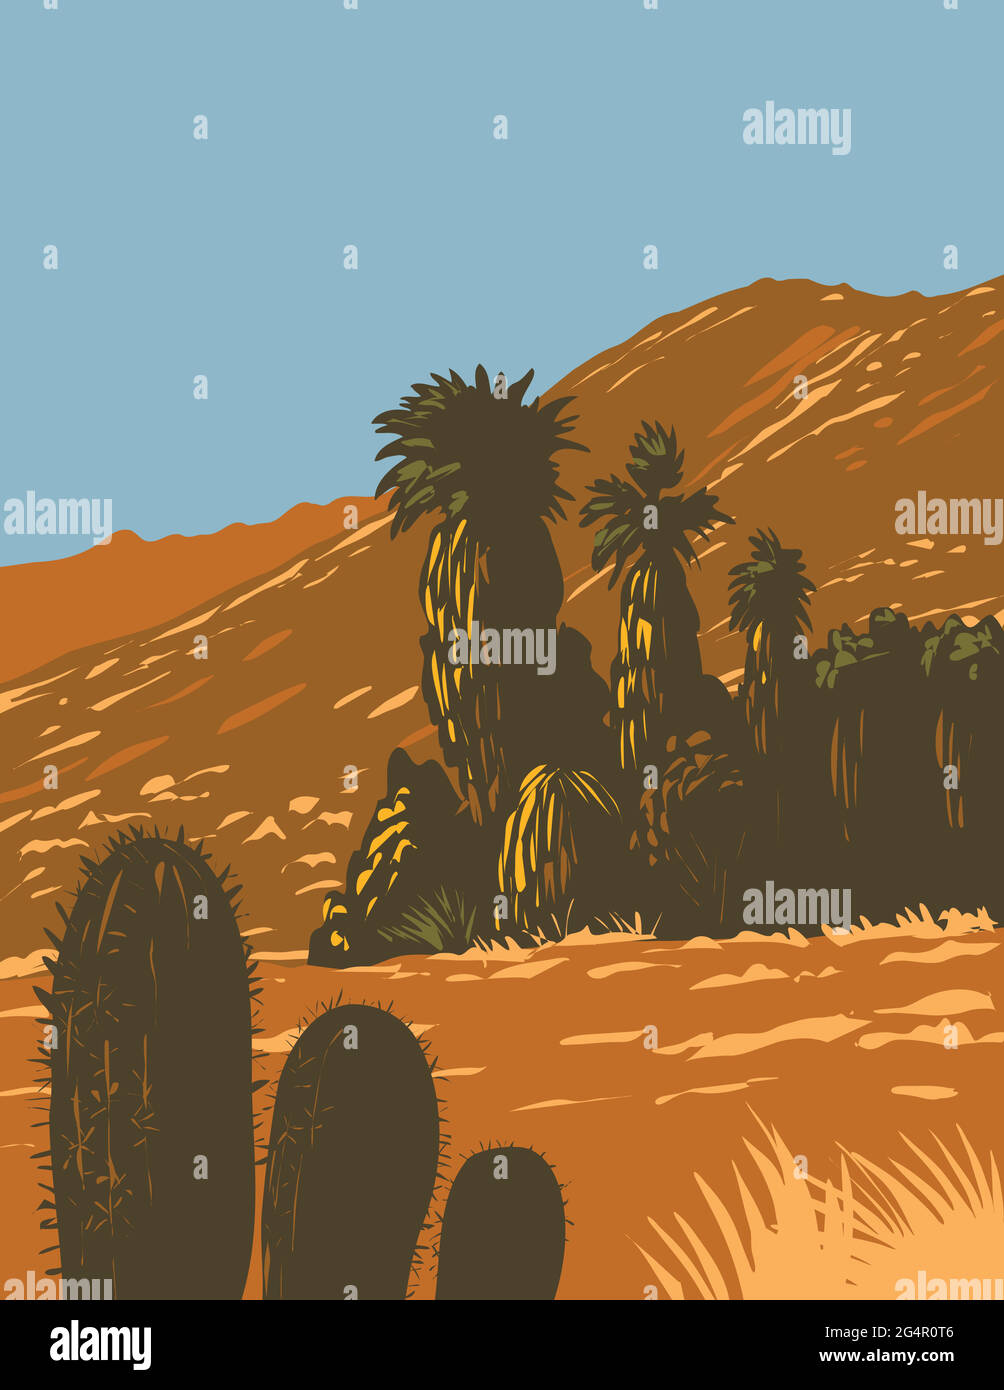 WPA-Plakatkunst von Kakteen und Wüstenfächerpalmen, die in Santa Rosa und San Jacinto Mountains National Monument in Palm Desert, Kalifornien, United Stat Stock Vektor